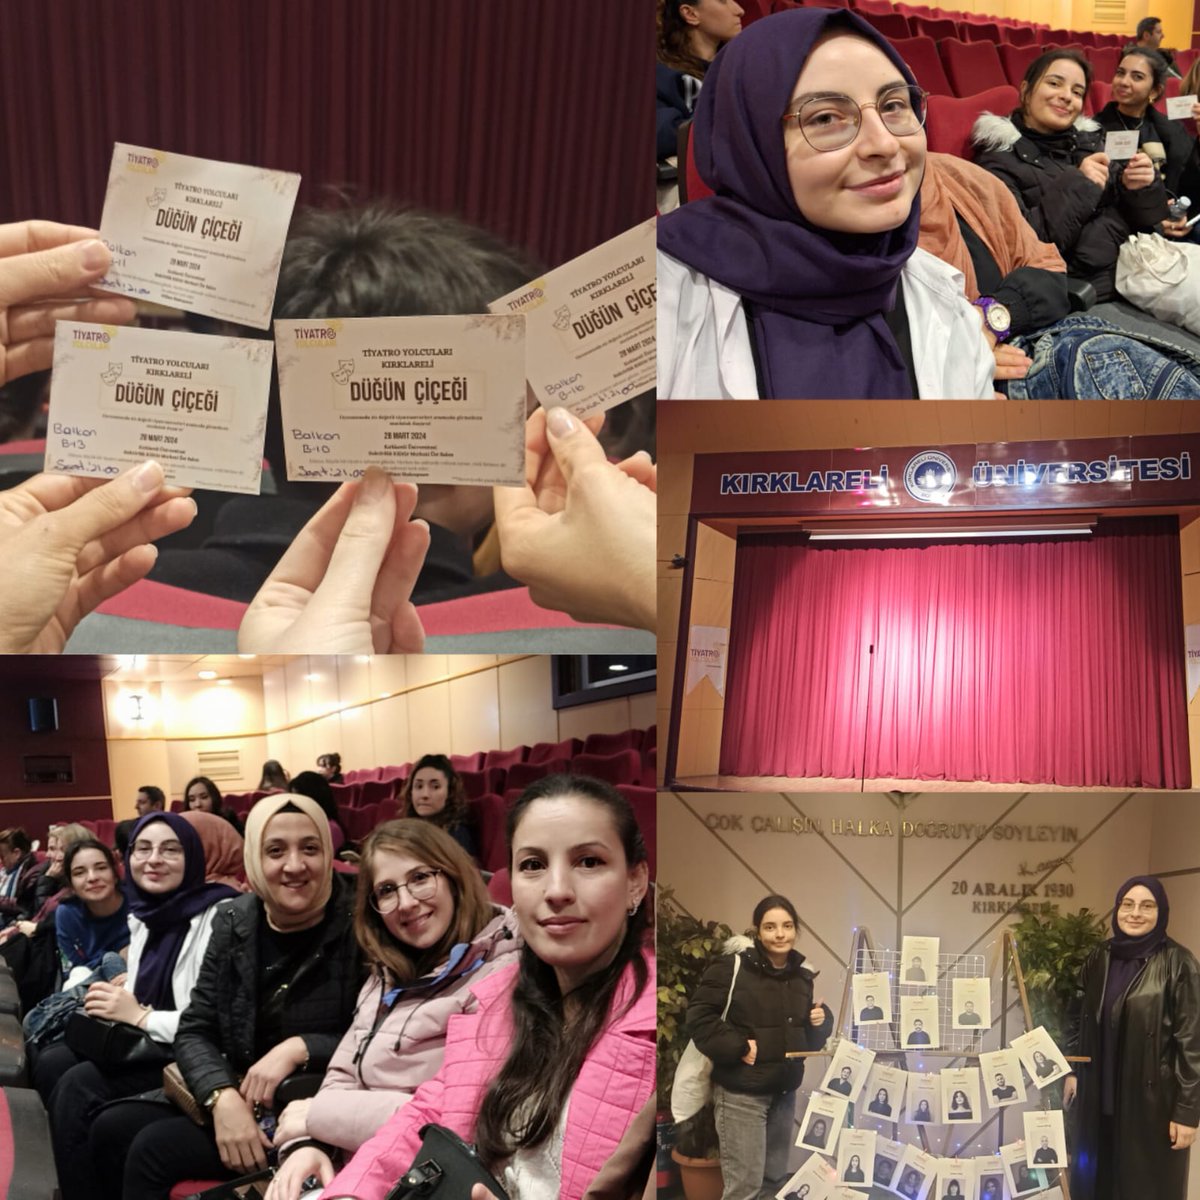 📍 Evlad-ı Fatihan Yurt Müdürlüğü '27 Mart Dünya Tiyatro' günü kapsamında öğrencilerimiz ile birlikte Kırklareli Rektörlük Merkezindeki 'Düğün Çiçeği' isimli tiyatro etkinligine gidildi.